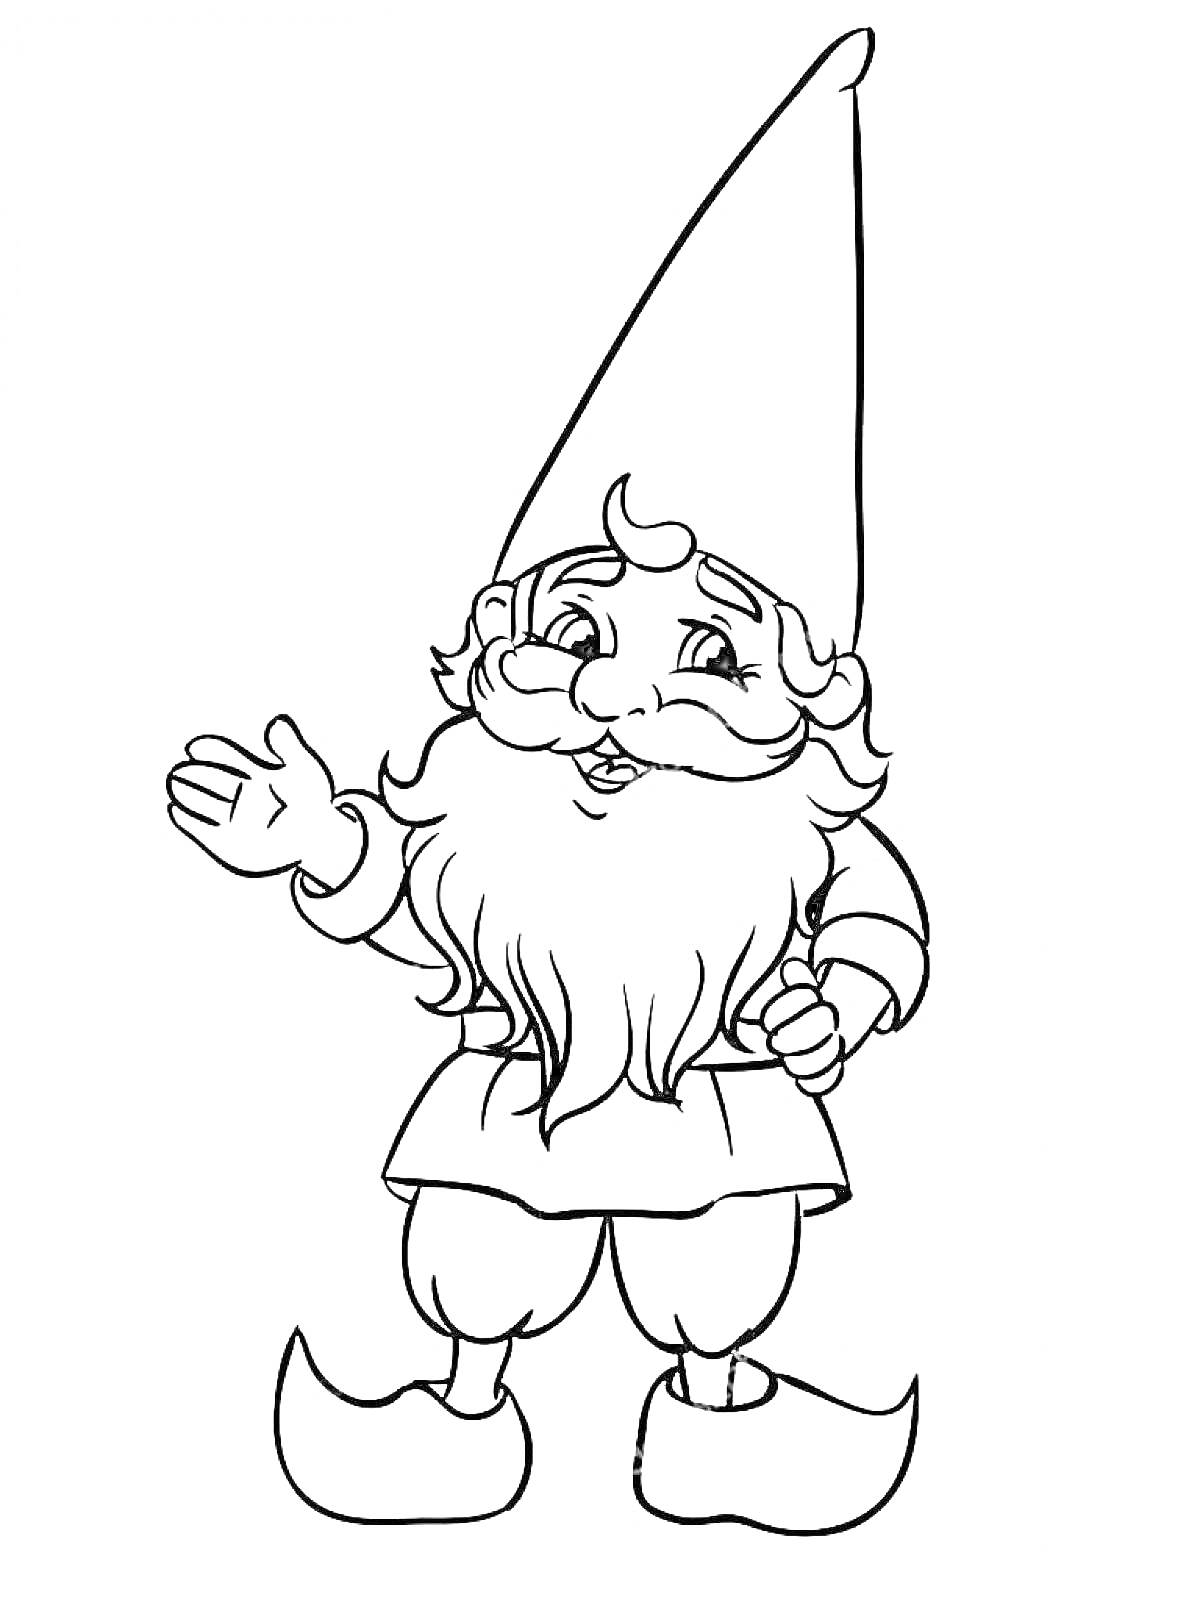 Раскраска Гномик с длинной шляпой, бородой и простым костюмом, жест приветствия